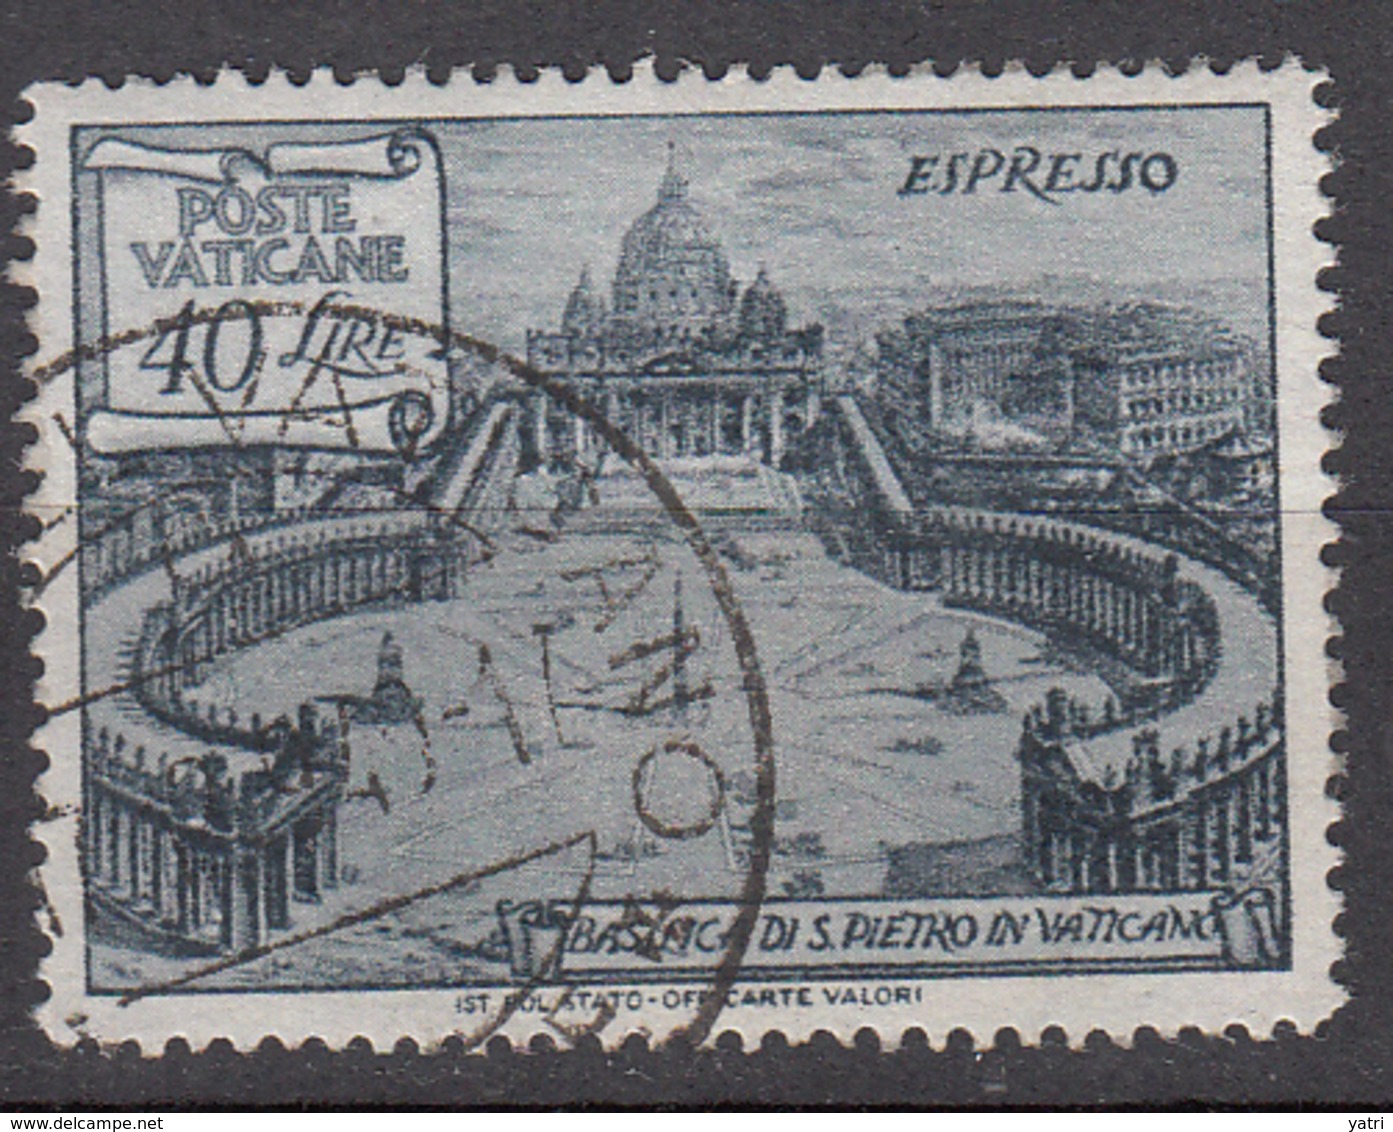 Vaticano - 1949 - Basiliche, Espresso 40 Lire - Express